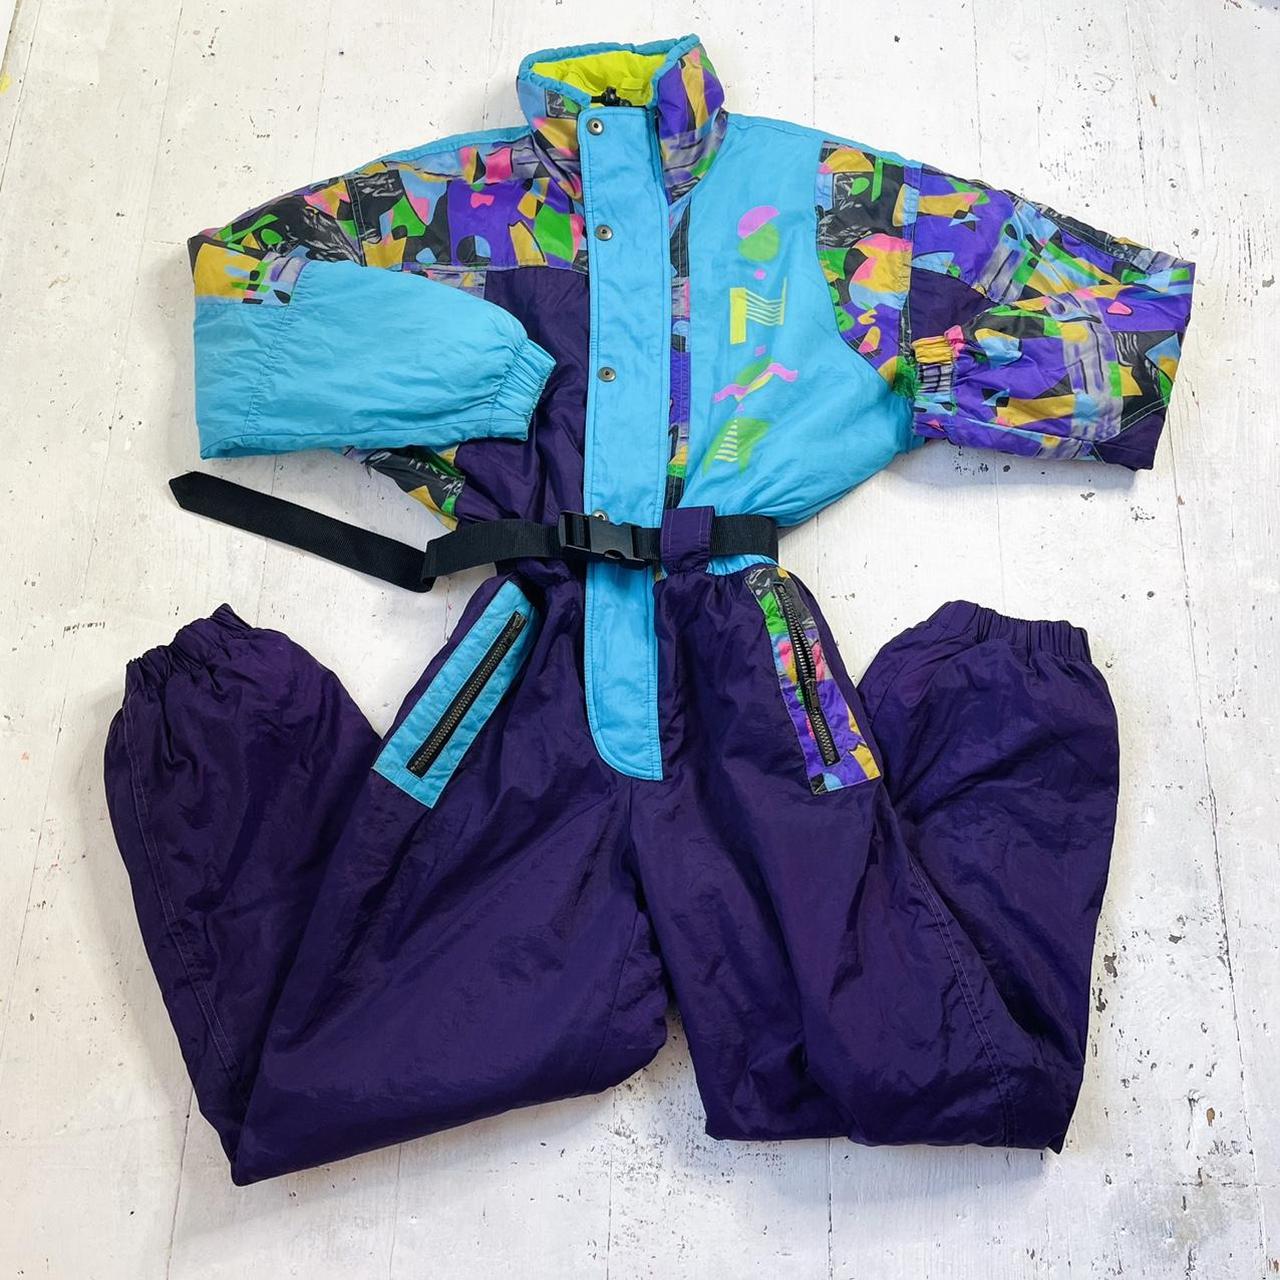 Vintage 80s snowsuit, ski suit, colour block,... - Depop